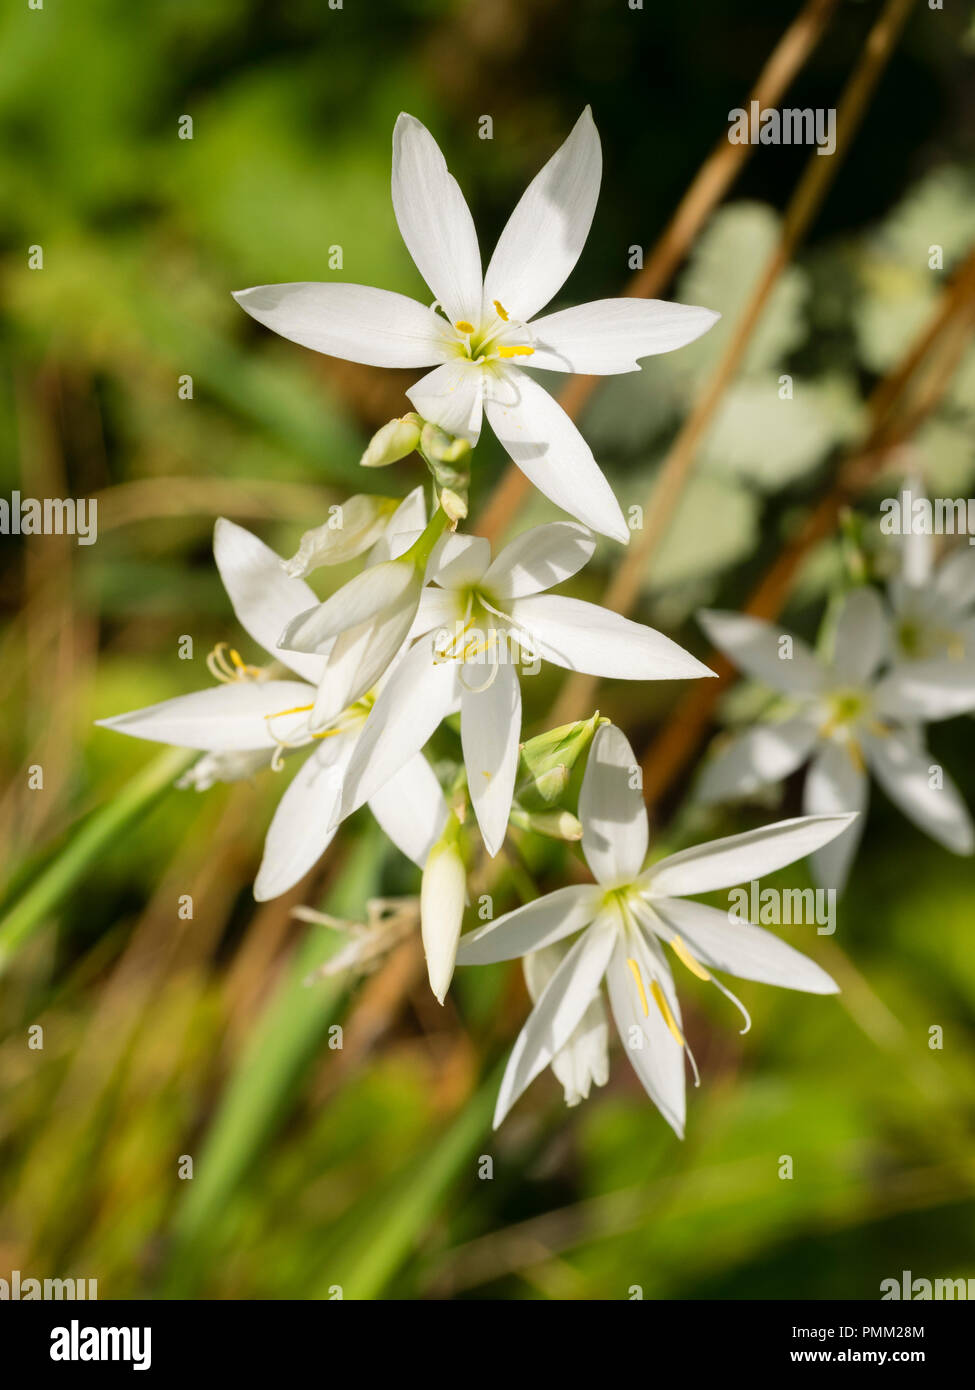 Star wie weiße Herbst Blumen der Südafrikanischen Kaffir Lily, Hesperantha  coccinea 'Alba' Stockfotografie - Alamy